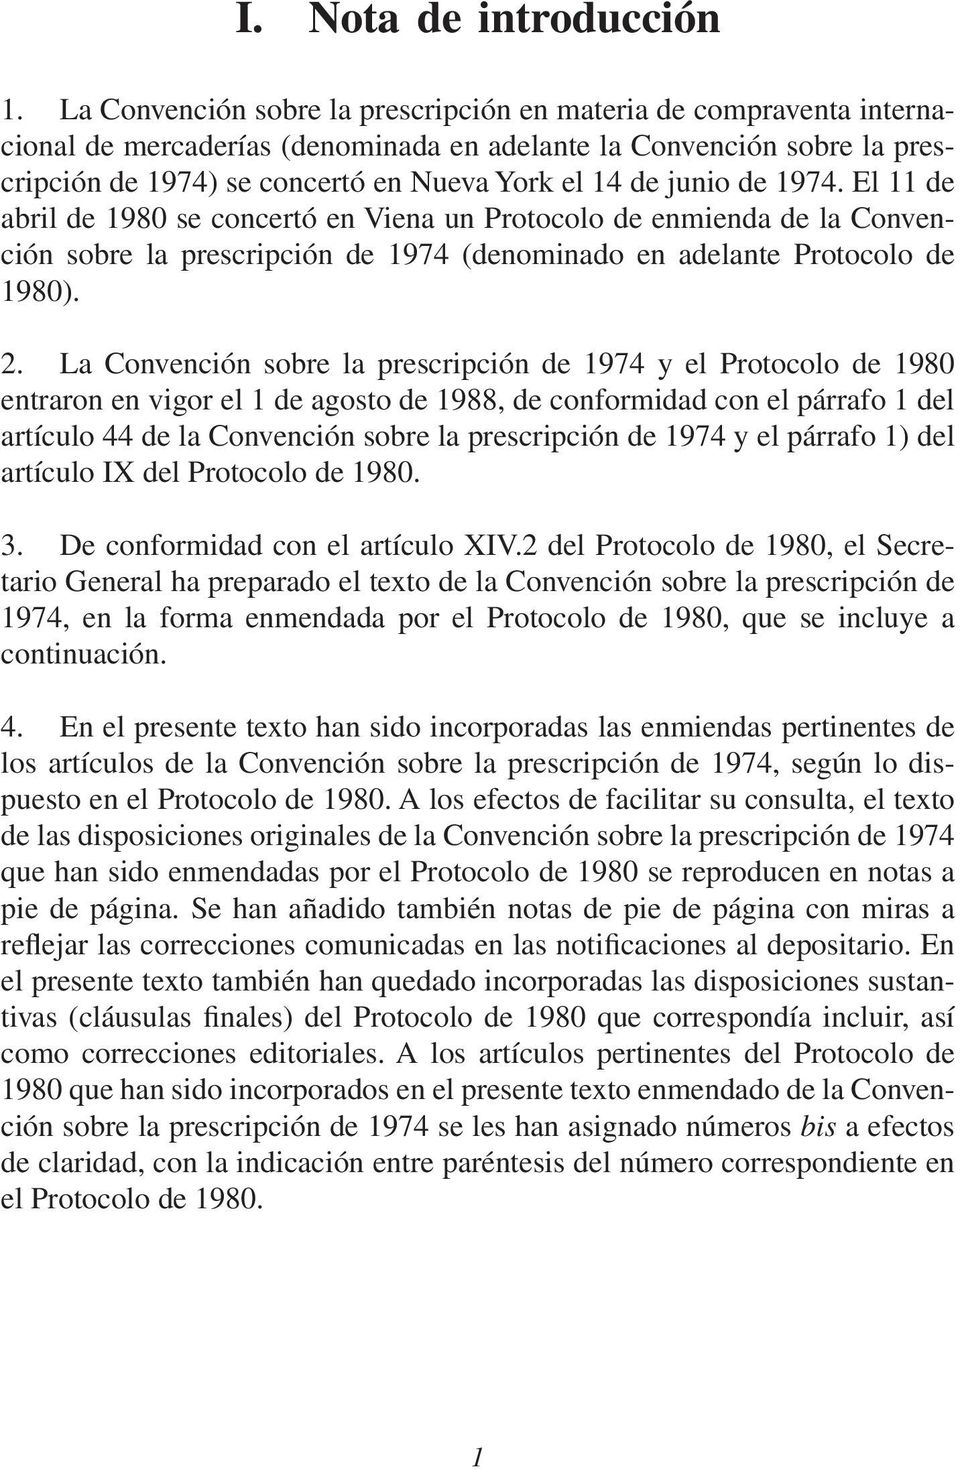 junio de 1974. El 11 de abril de 1980 se concertó en Viena un Protocolo de enmienda de la Convención sobre la prescripción de 1974 (denominado en adelante Protocolo de 1980). 2.